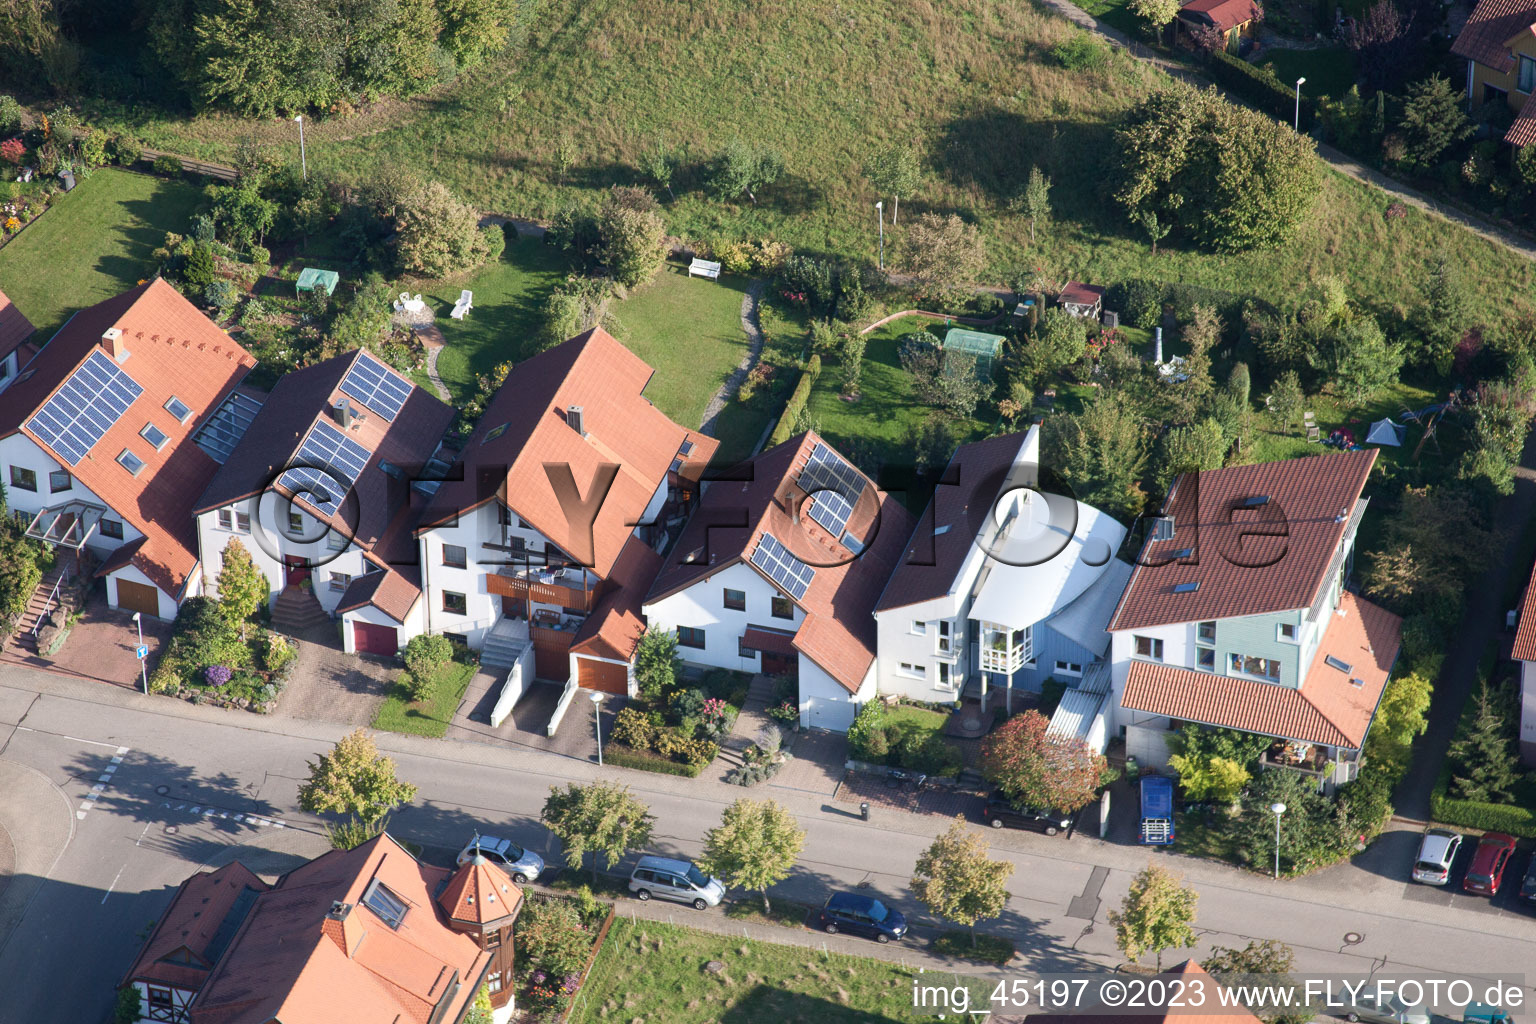 Langensteinbach, Mozartstr in Karlsbad im Bundesland Baden-Württemberg, Deutschland aus der Drohnenperspektive